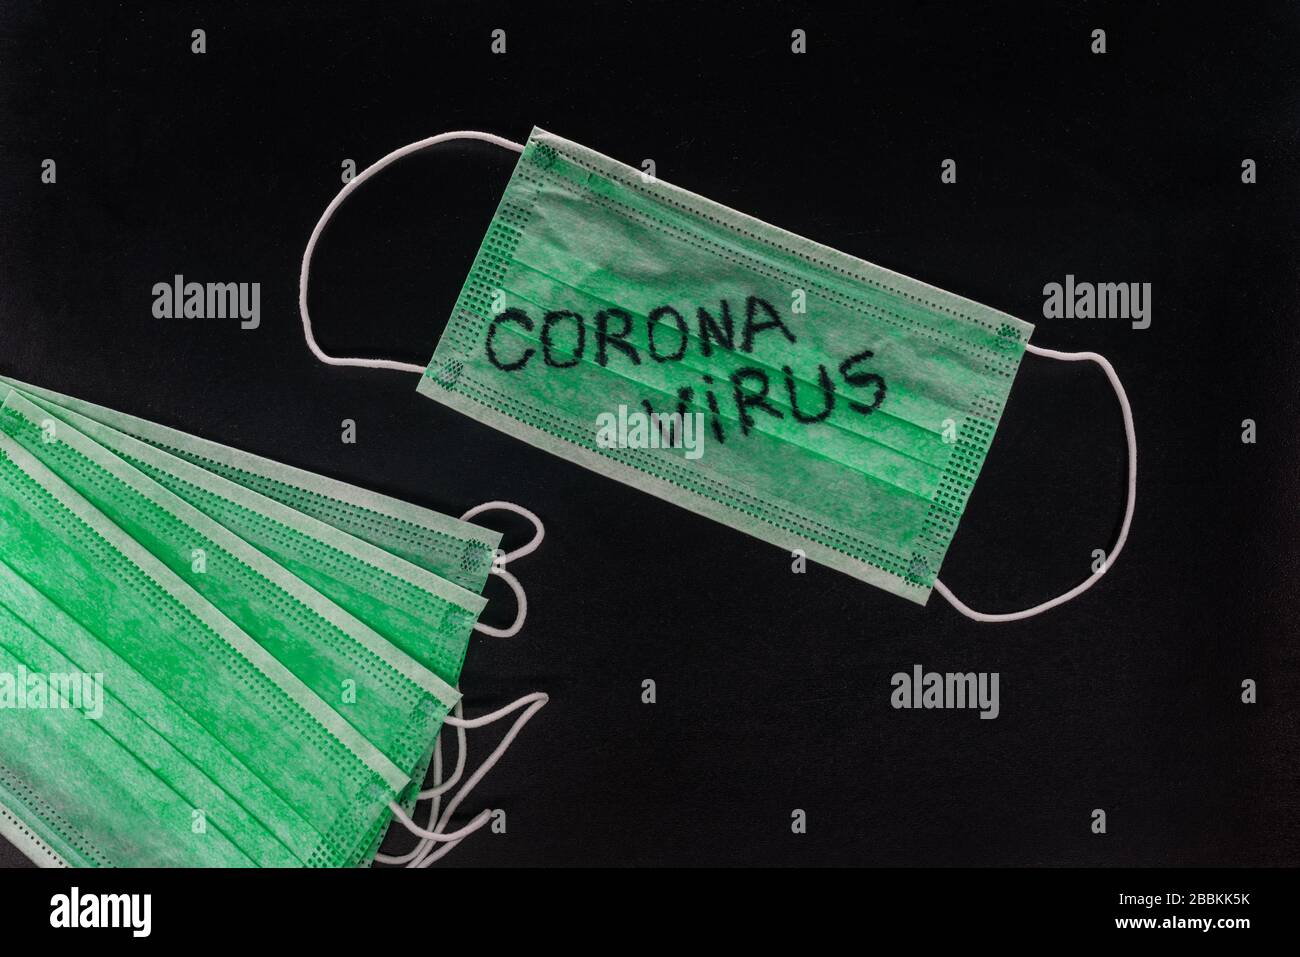 Coronavirus Wort auf einer grünen medizinischen Maske geschrieben. Coronavirus Text auf einer Schutzmaske für Ihr Design, Wuhan, 2019-nKoV. Draufsicht Konzept Stockfoto